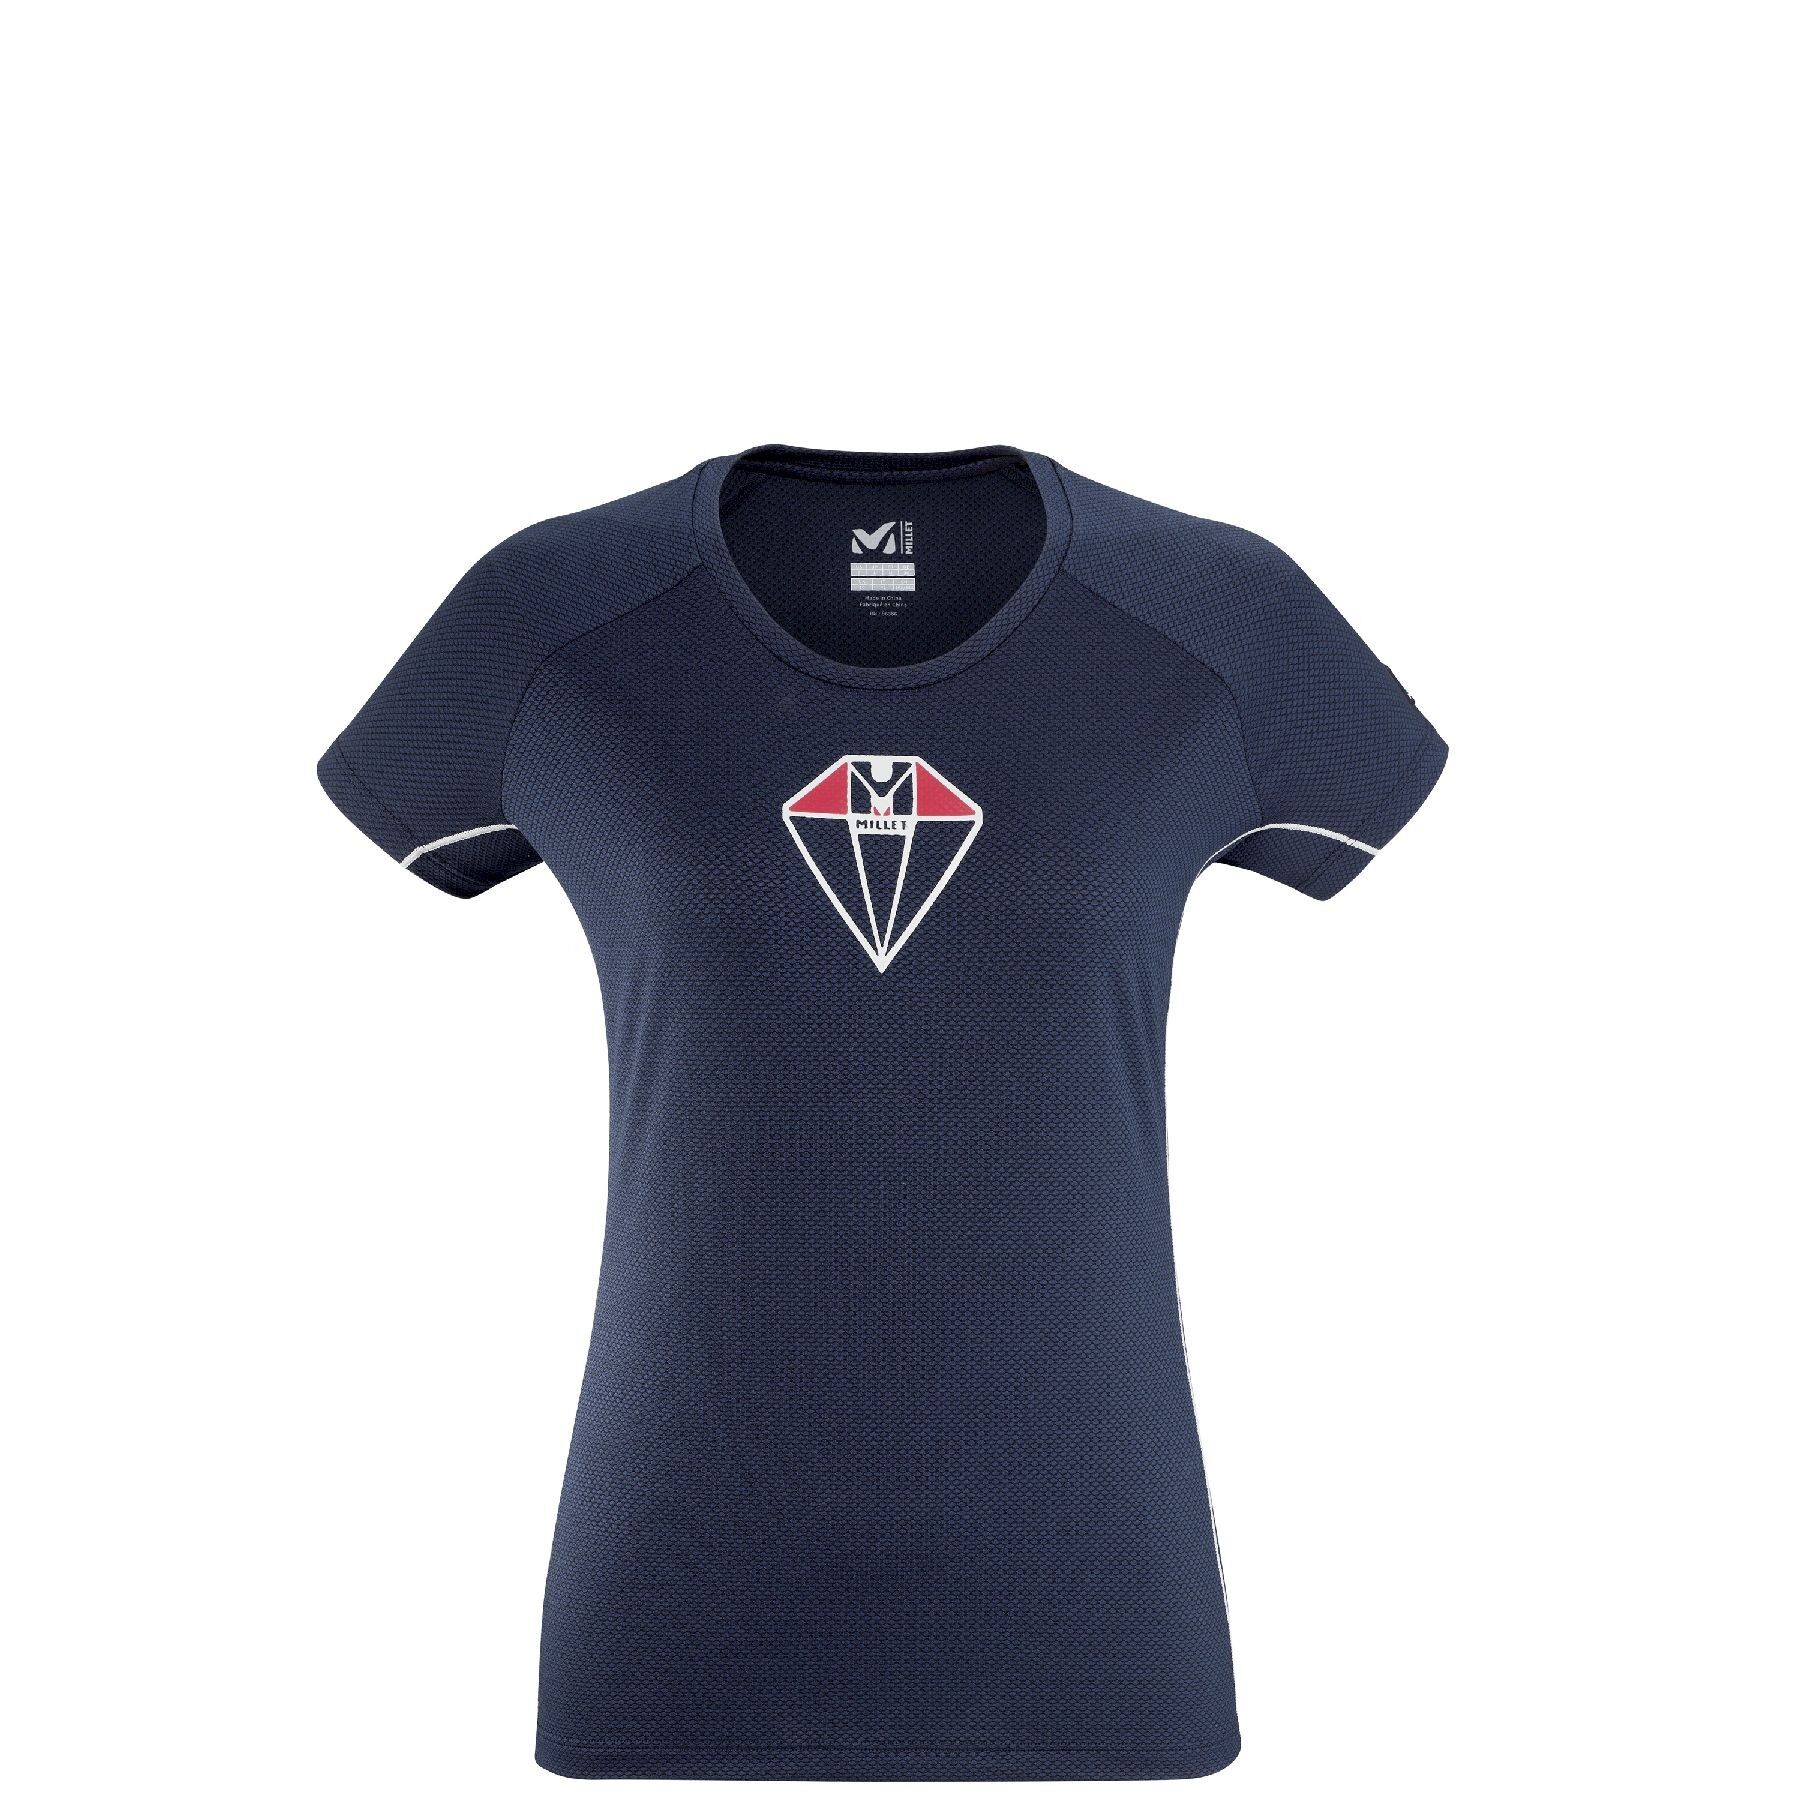 Millet Trilogy De Diamond Ts Ss  - T-shirt - Women's